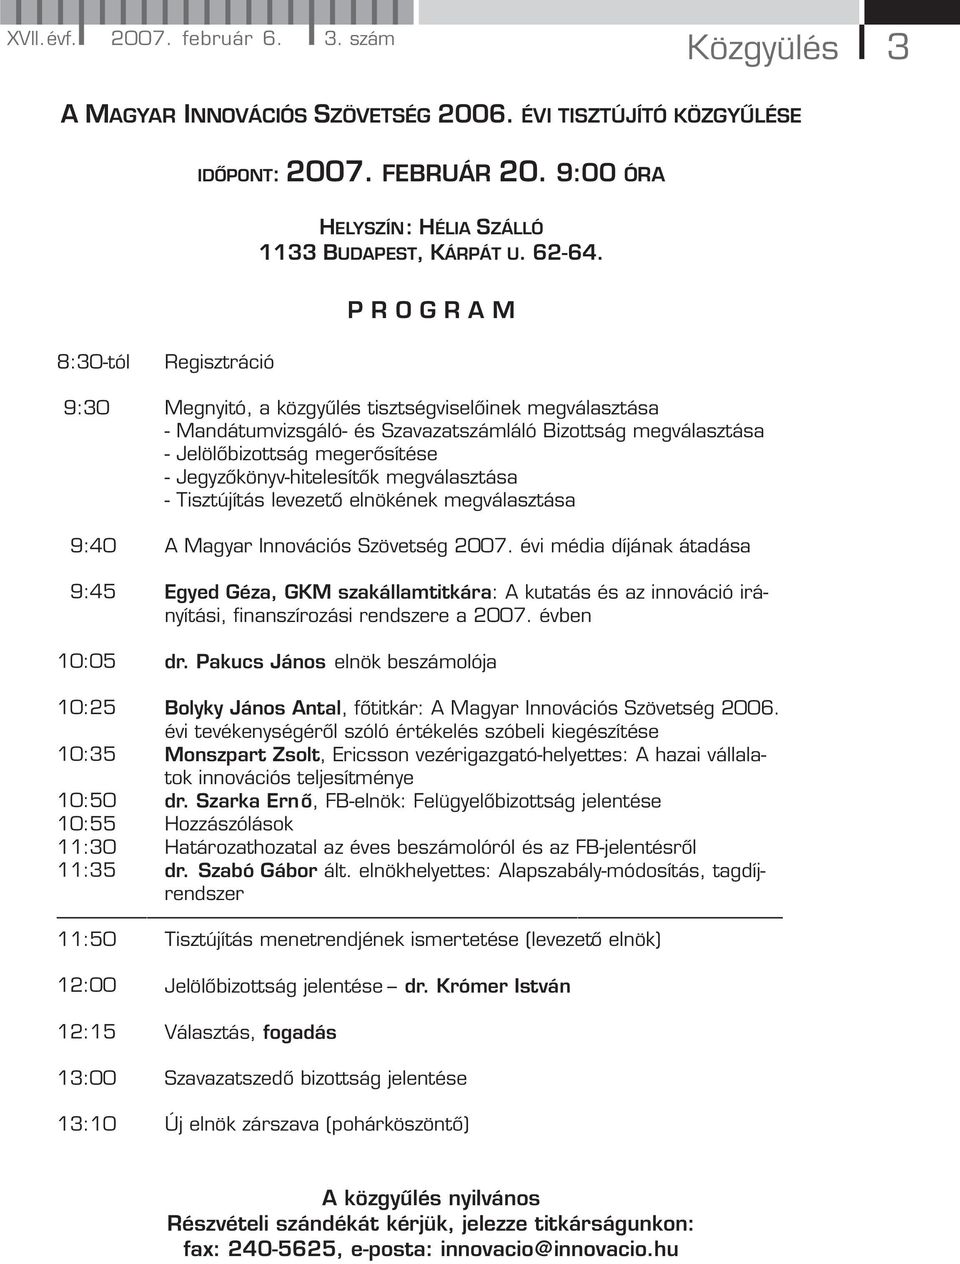 Jegyzőkönyv-hitelesítők megválasztása - Tisztújítás levezető elnökének megválasztása 9:40 A Magyar Innovációs Szövetség 2007.